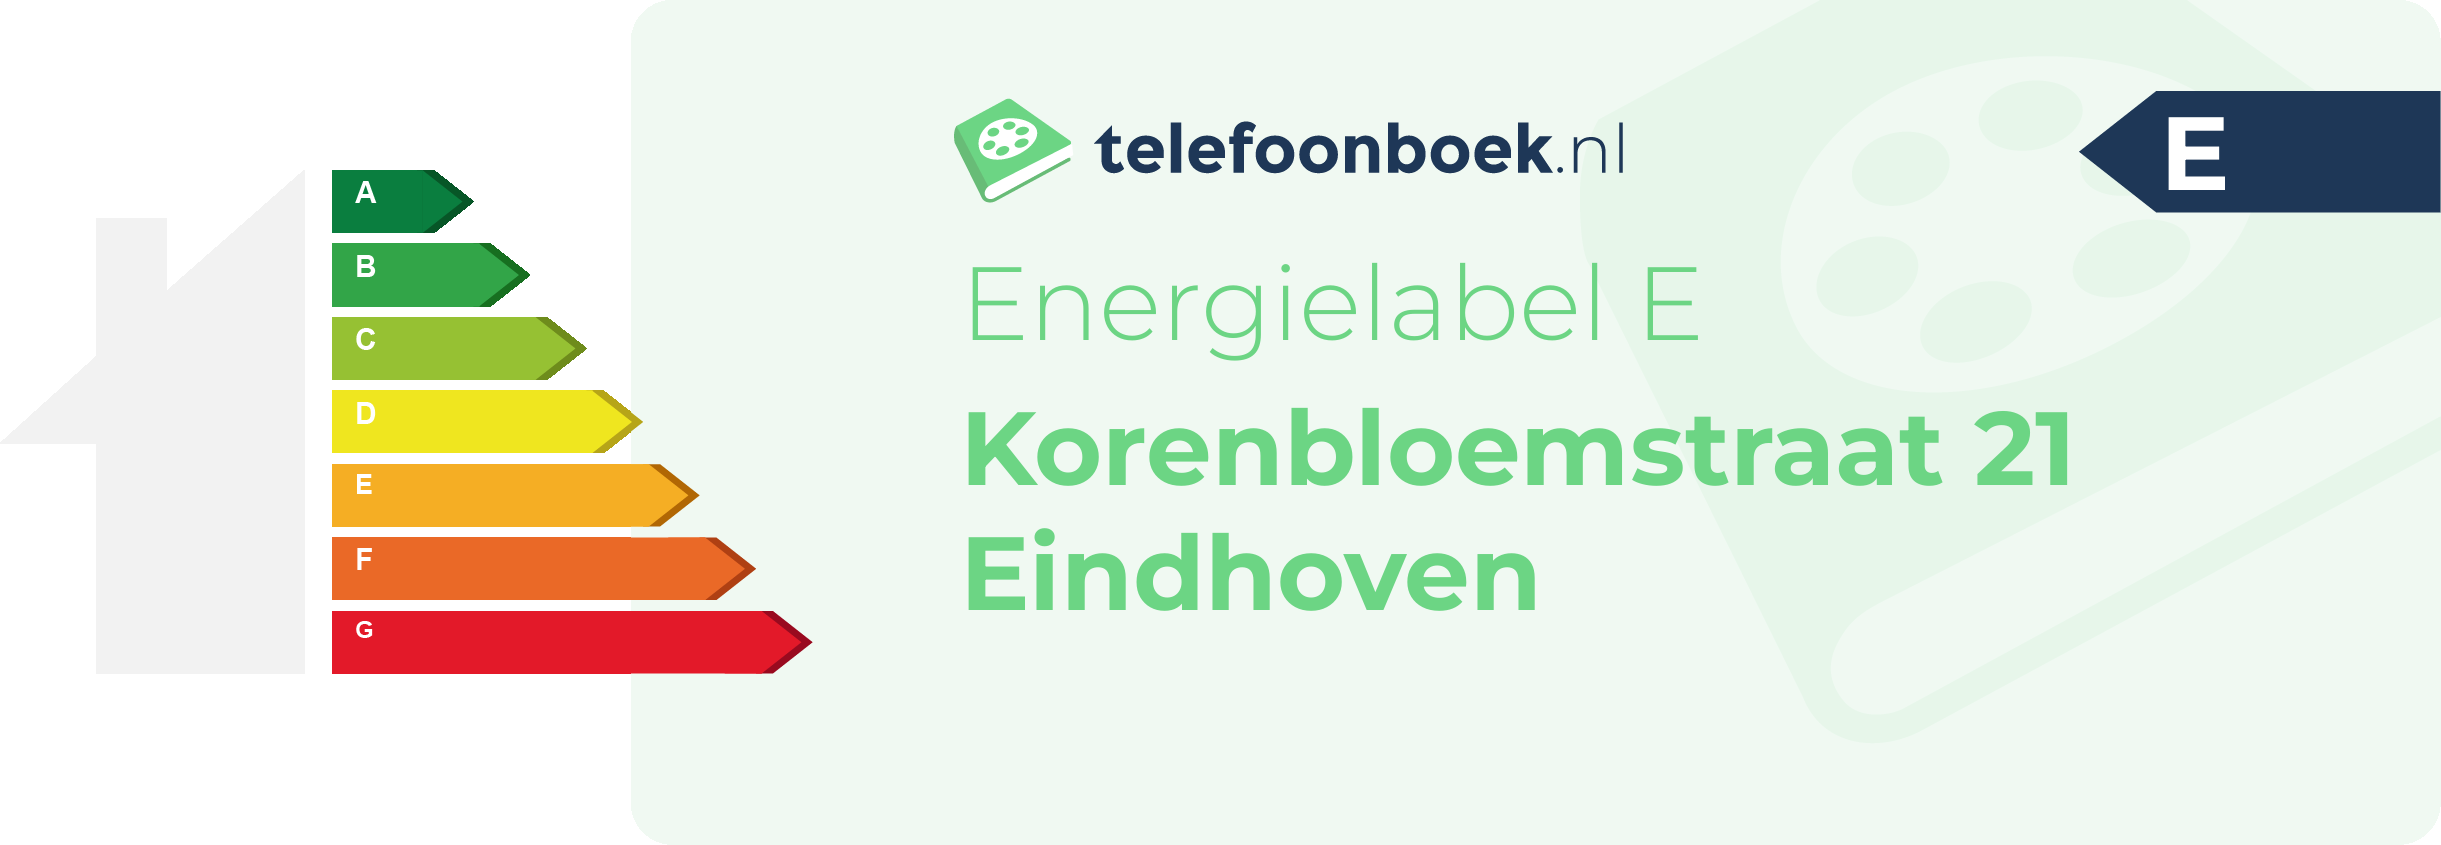 Energielabel Korenbloemstraat 21 Eindhoven